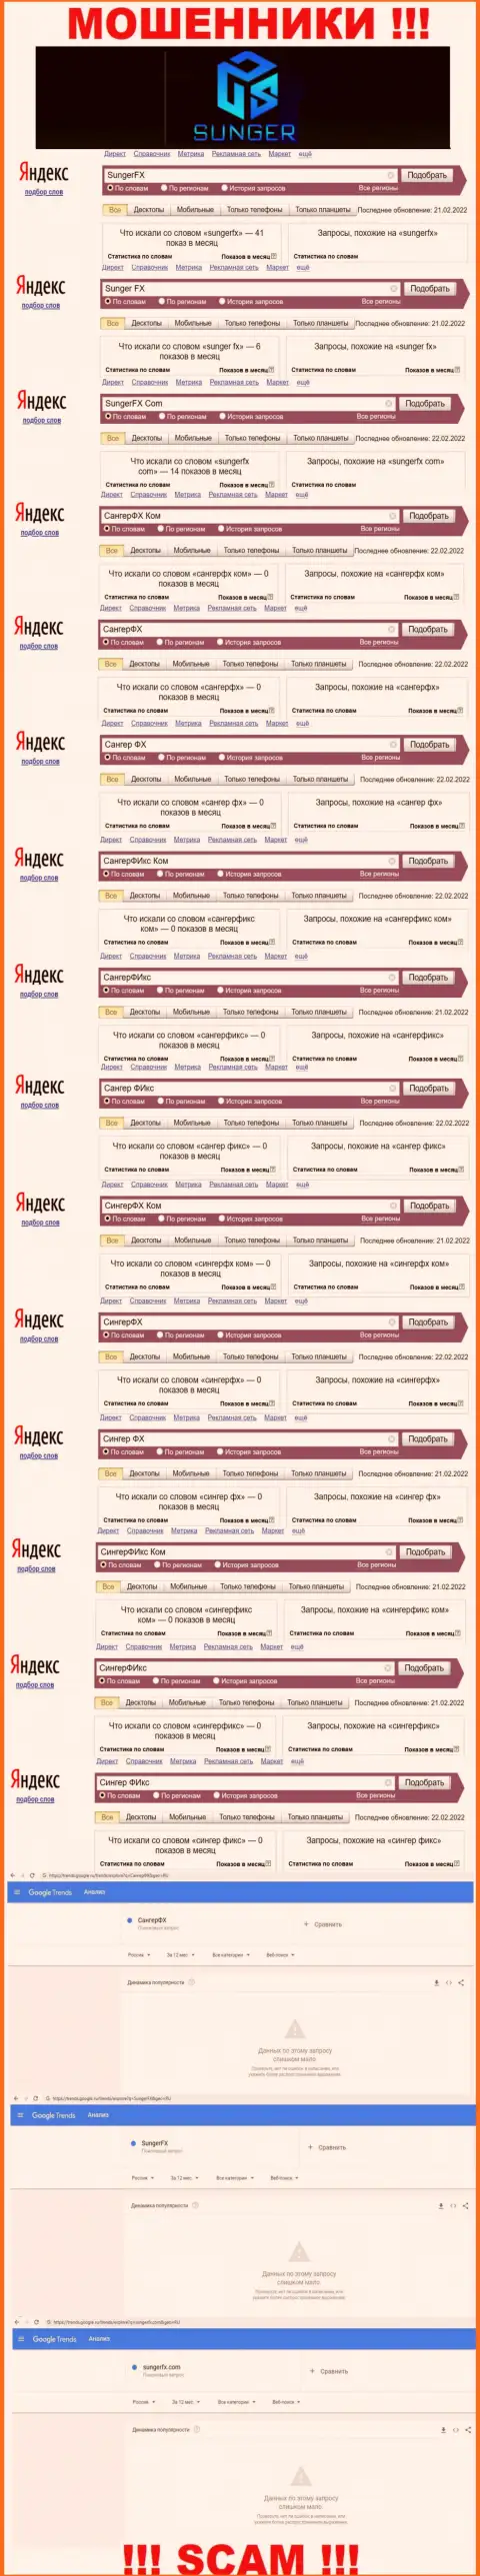 SungerFX - это ВОРЫ, сколько раз искали в поисковиках всемирной интернет паутины указанную шарашку